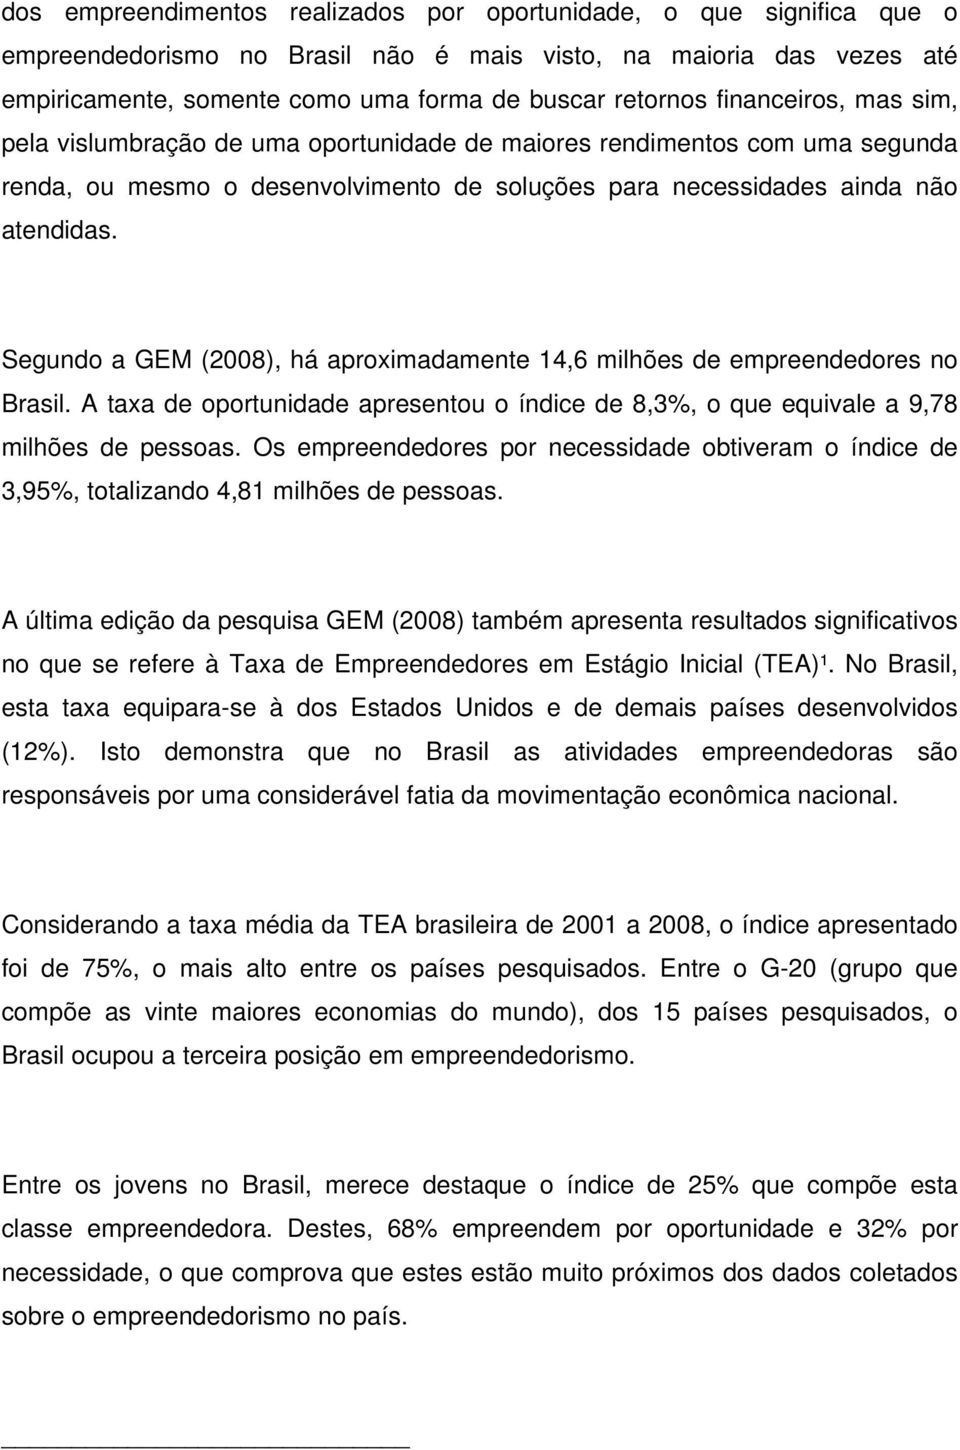 Segundo a GEM (2008), há aproximadamente 14,6 milhões de empreendedores no Brasil. A taxa de oportunidade apresentou o índice de 8,3%, o que equivale a 9,78 milhões de pessoas.